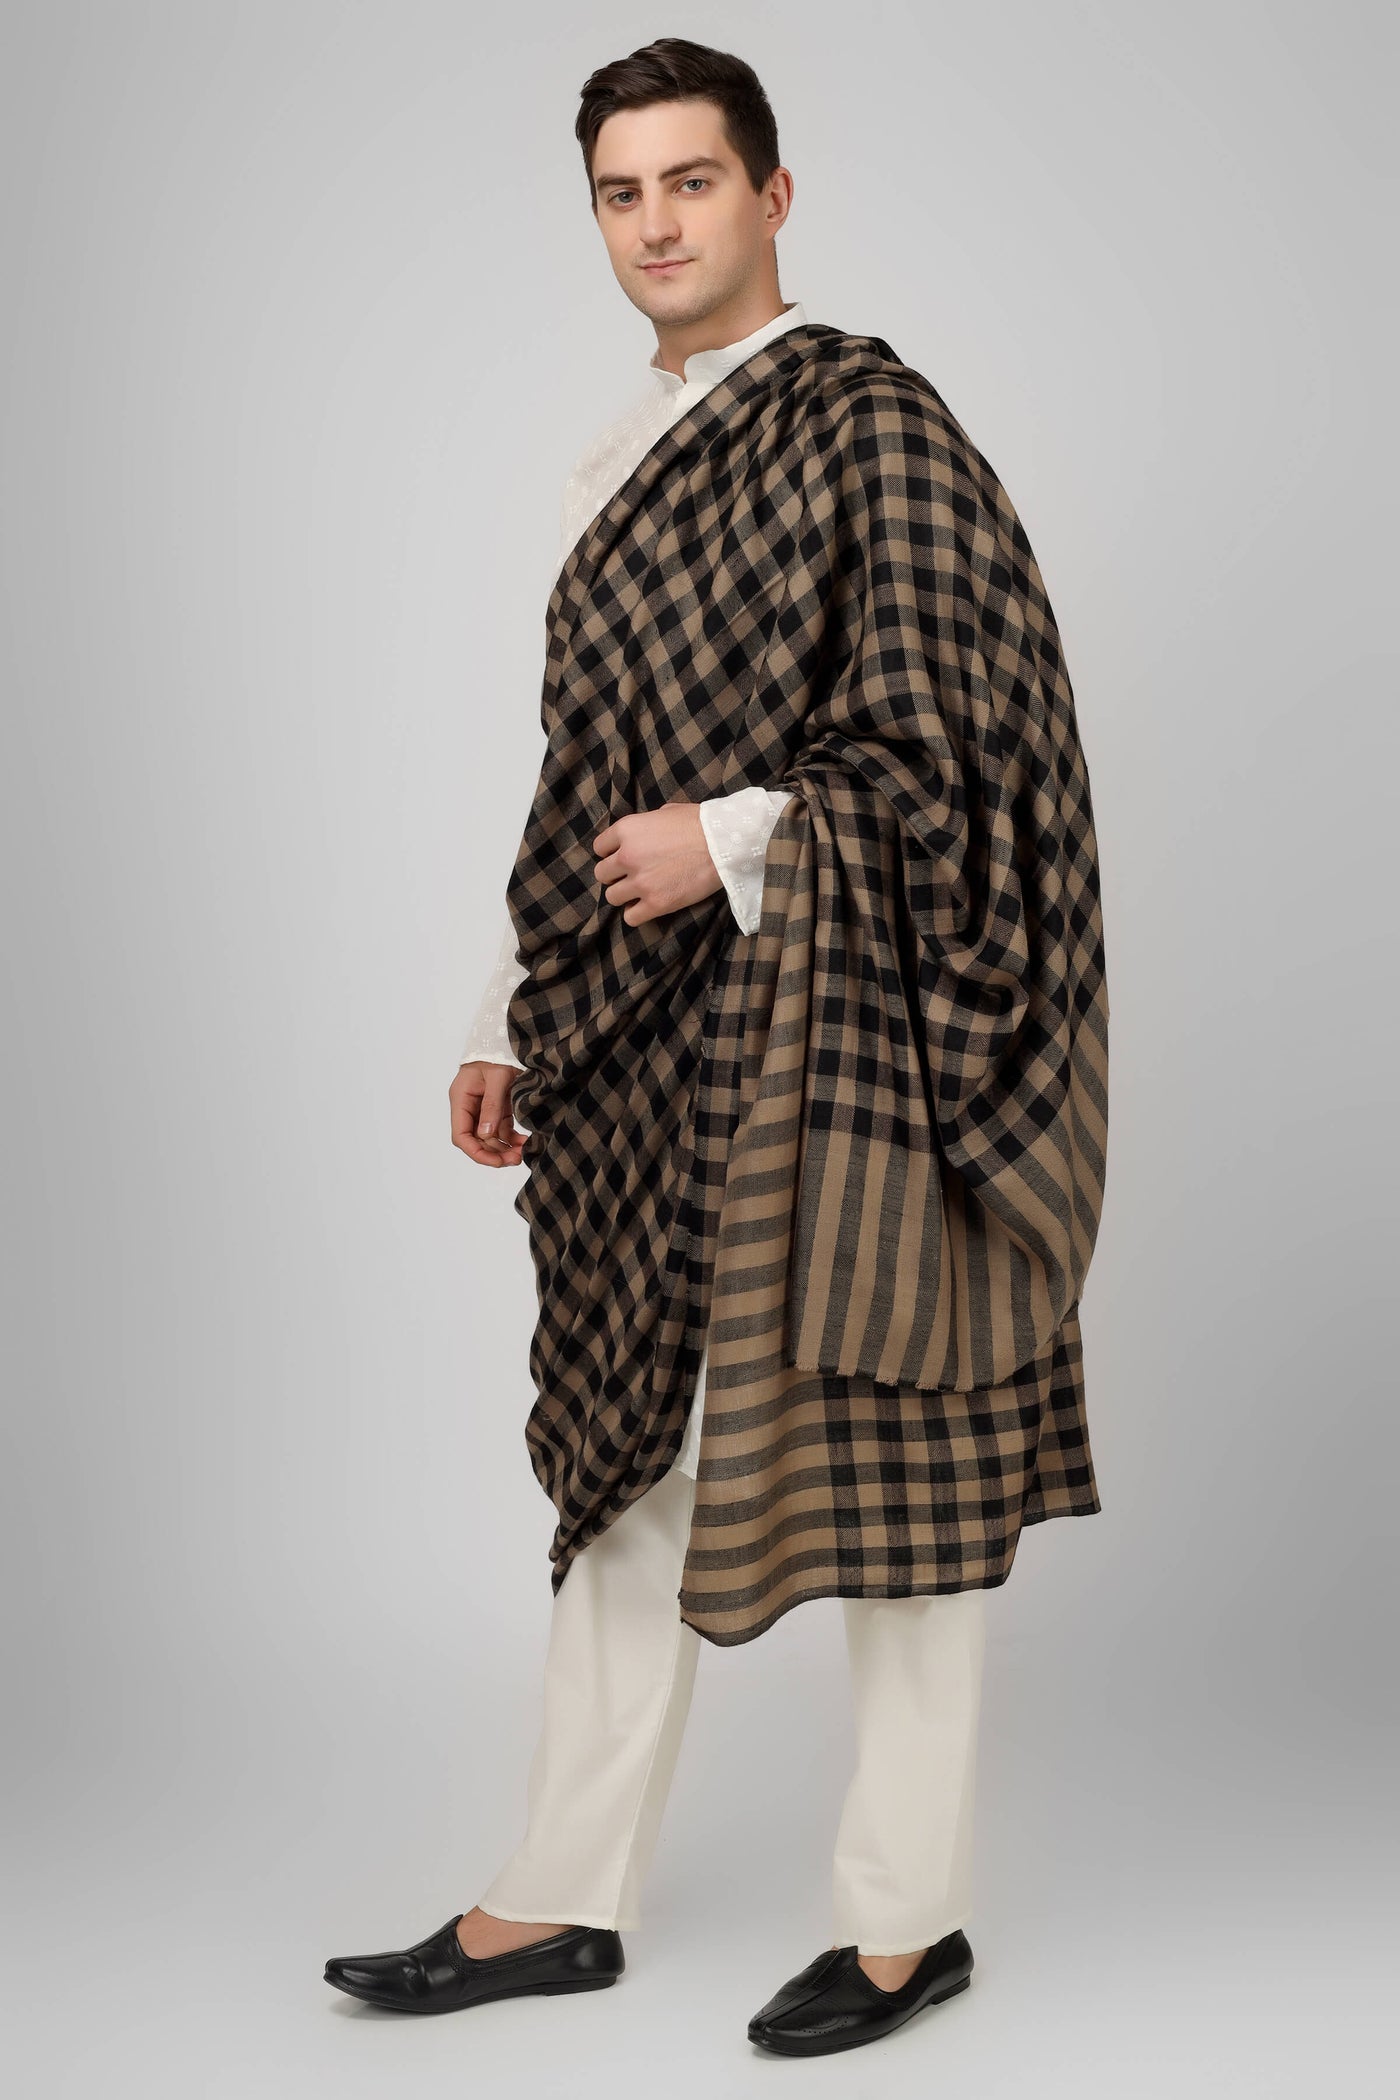 Mens Pashmina big check natural and black  design shawl